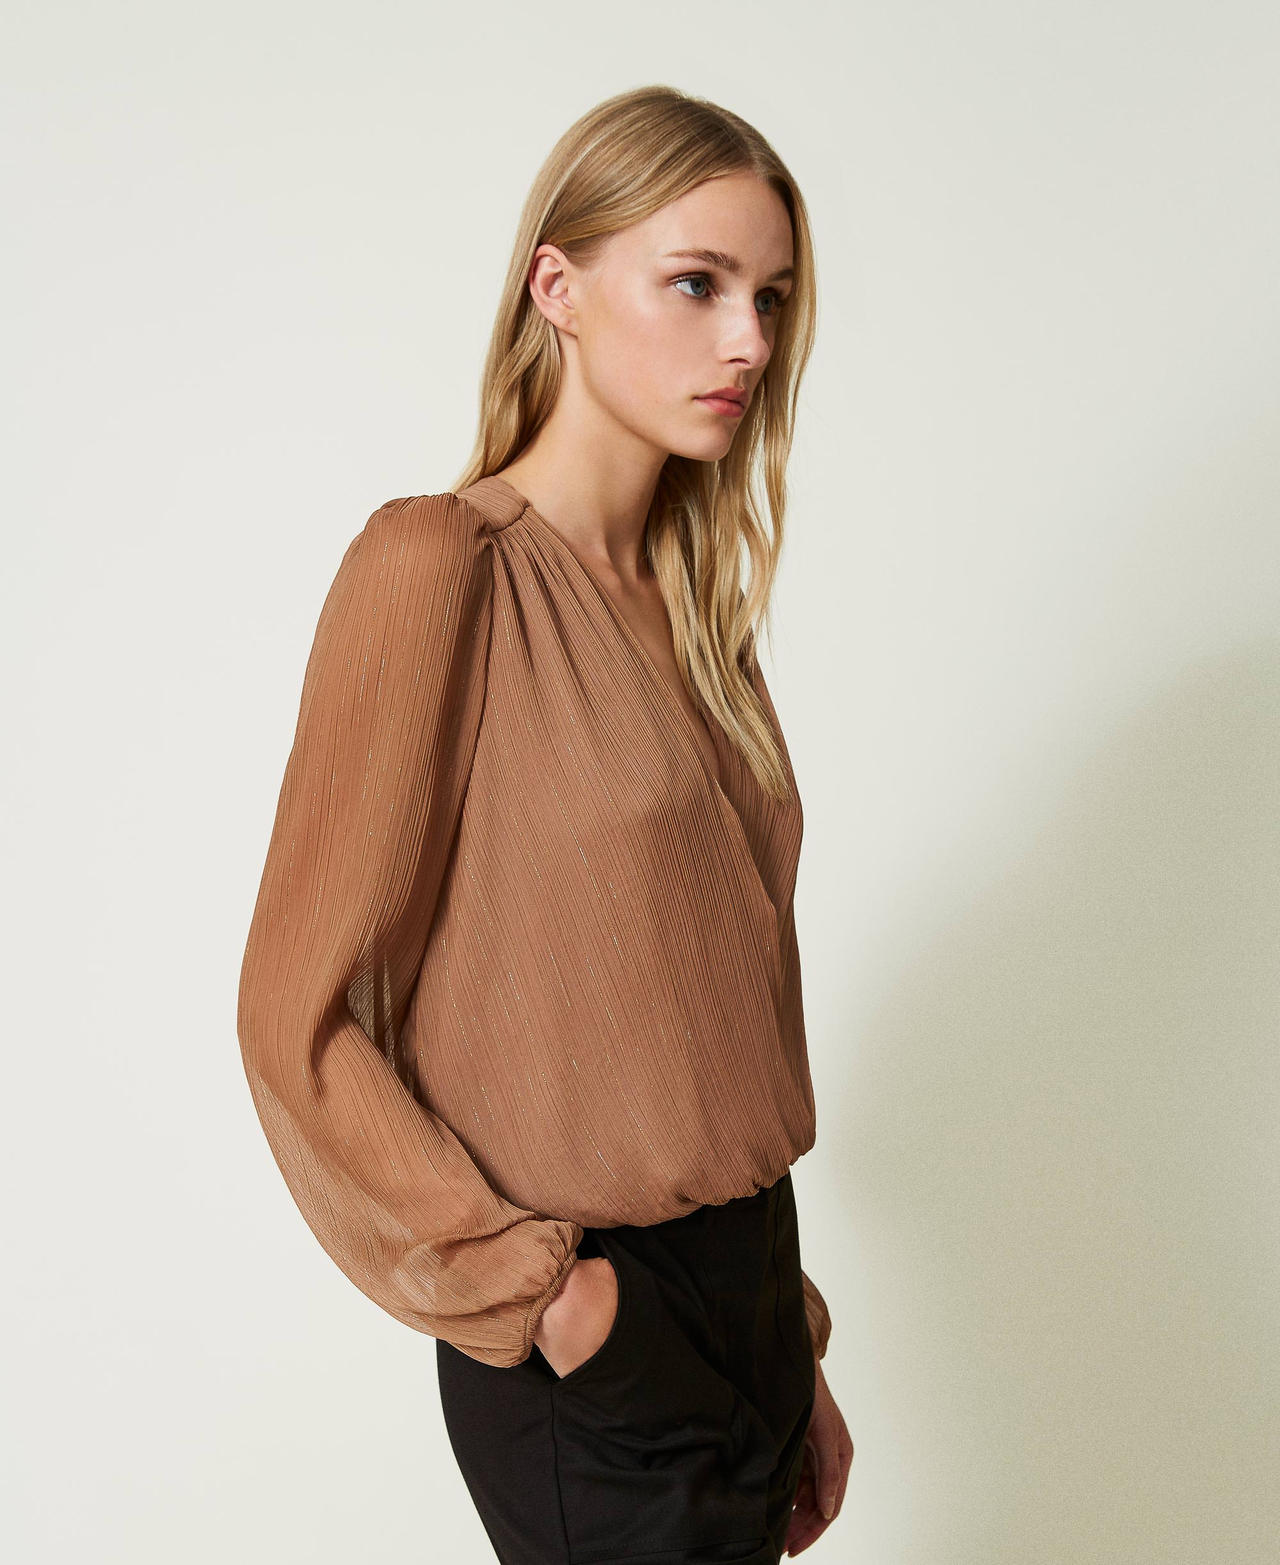 Creponne blouse with lurex thread “Dark Sand” Brown Woman 232TQ2042-02